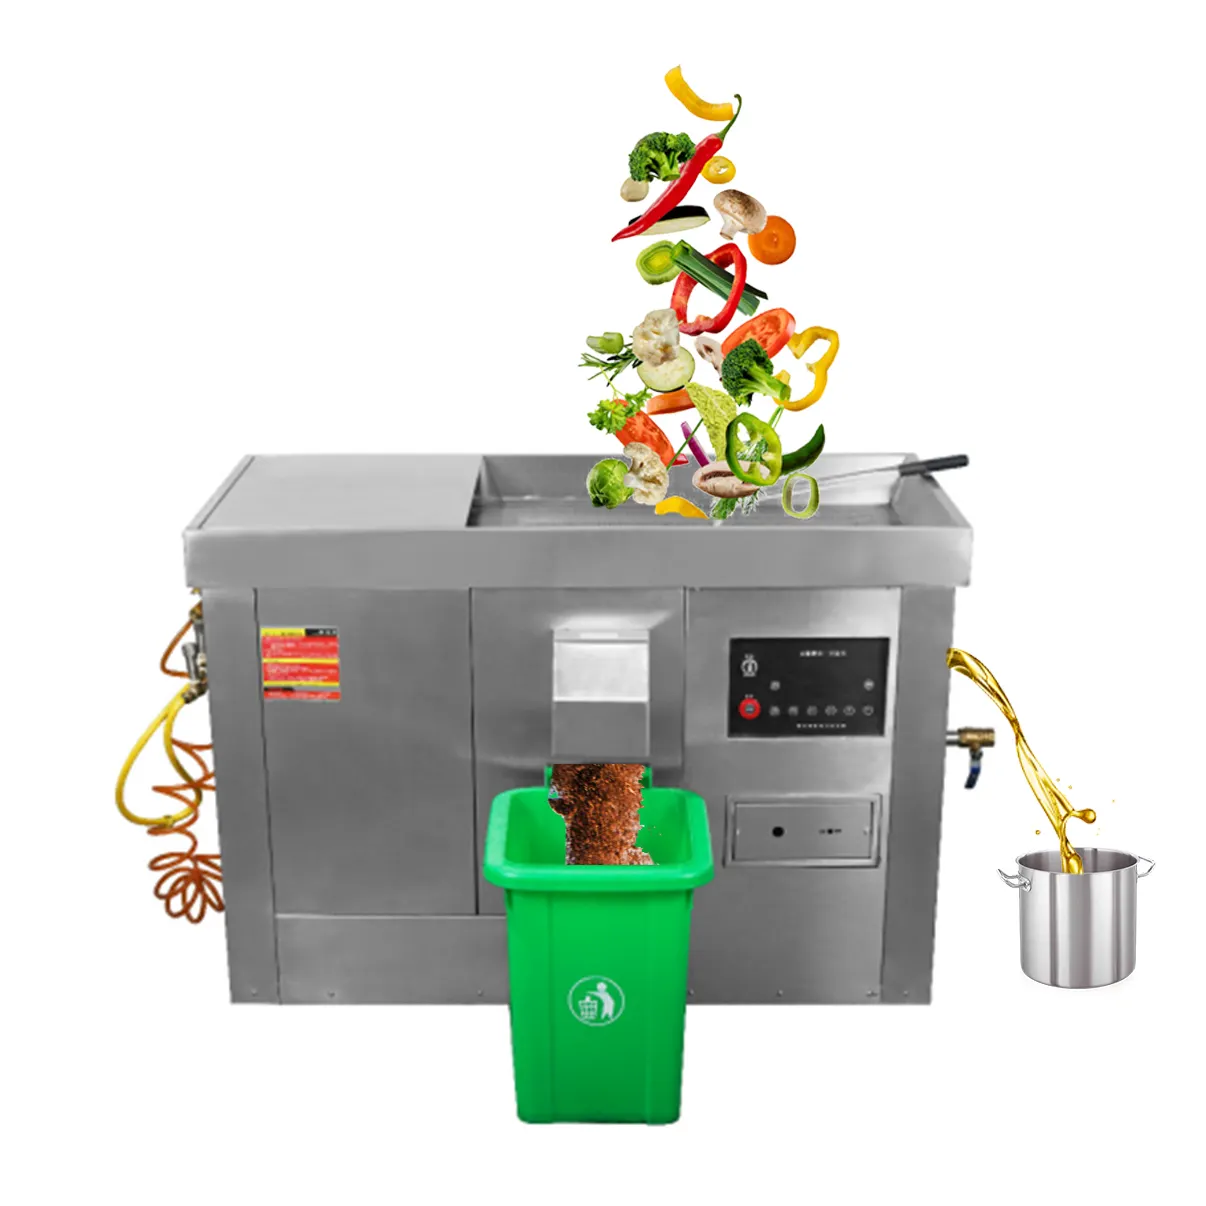 상업용 주방 식품 폐기물 오일-물 분리 쓰레기 디스포저 기계 음식물 쓰레기 탈수 음식물 쓰레기 재활용 마하